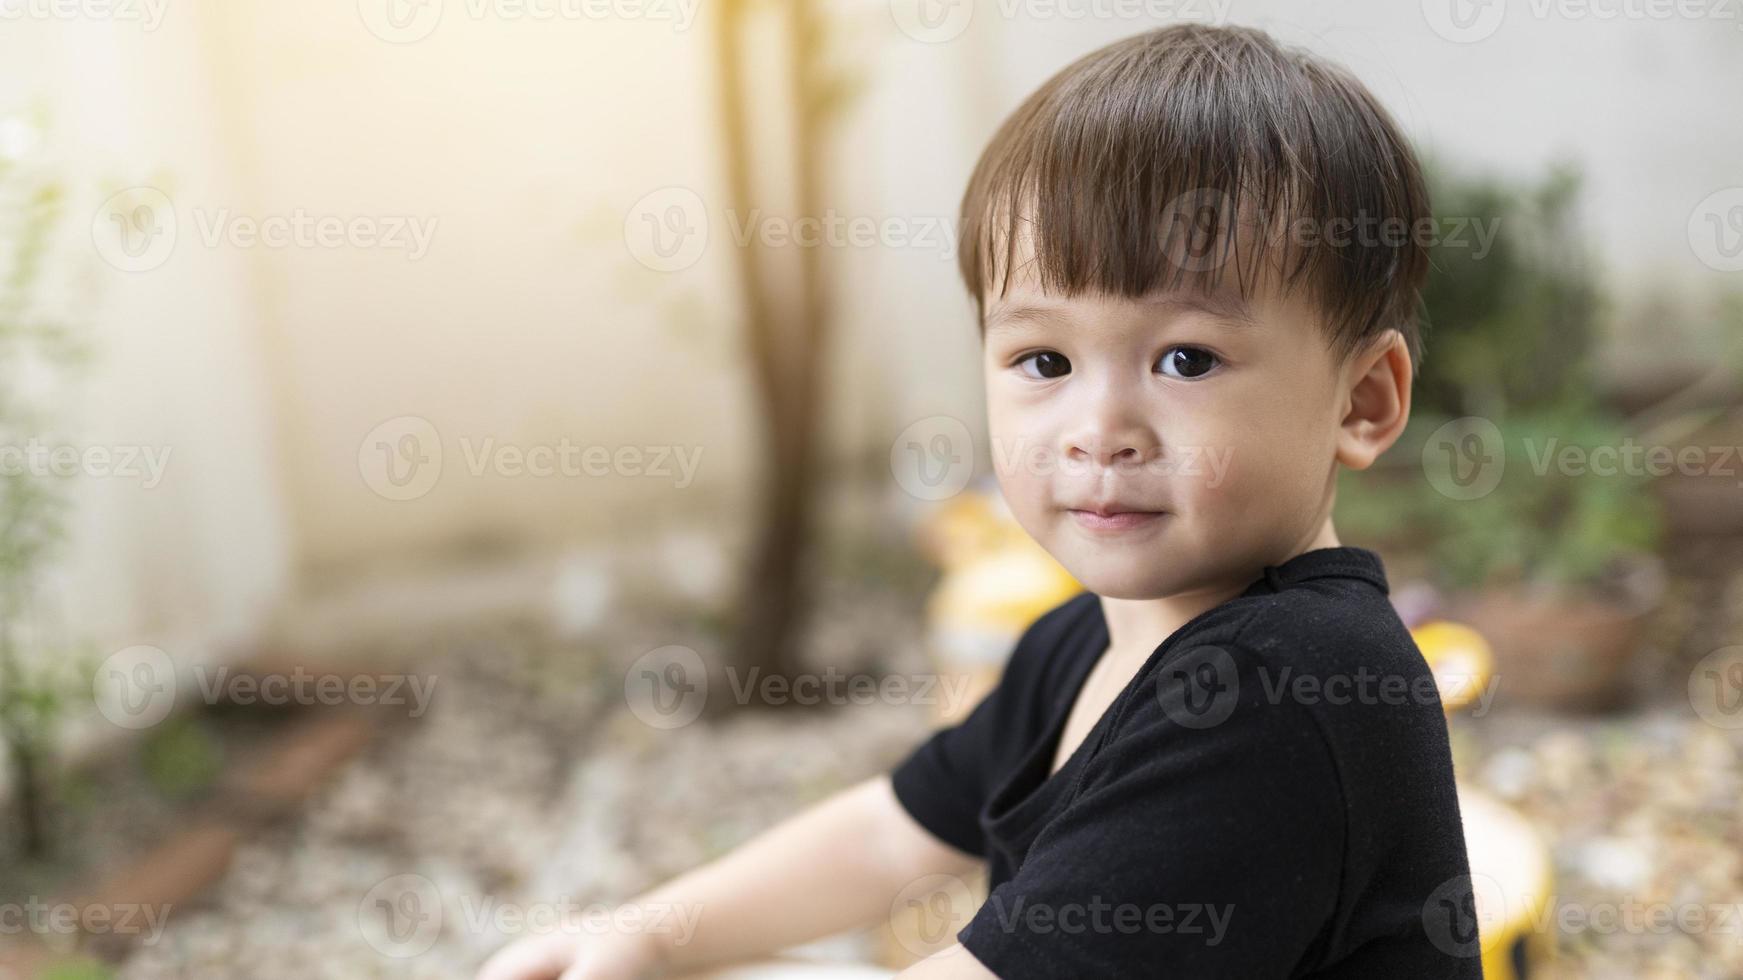 close-up menino asiático bonitinho sorrindo feliz ao ar livre. cara de bebê, crianças felizes brincando de manhã. expressão confiante. o rosto da criança mostra confiança. foto